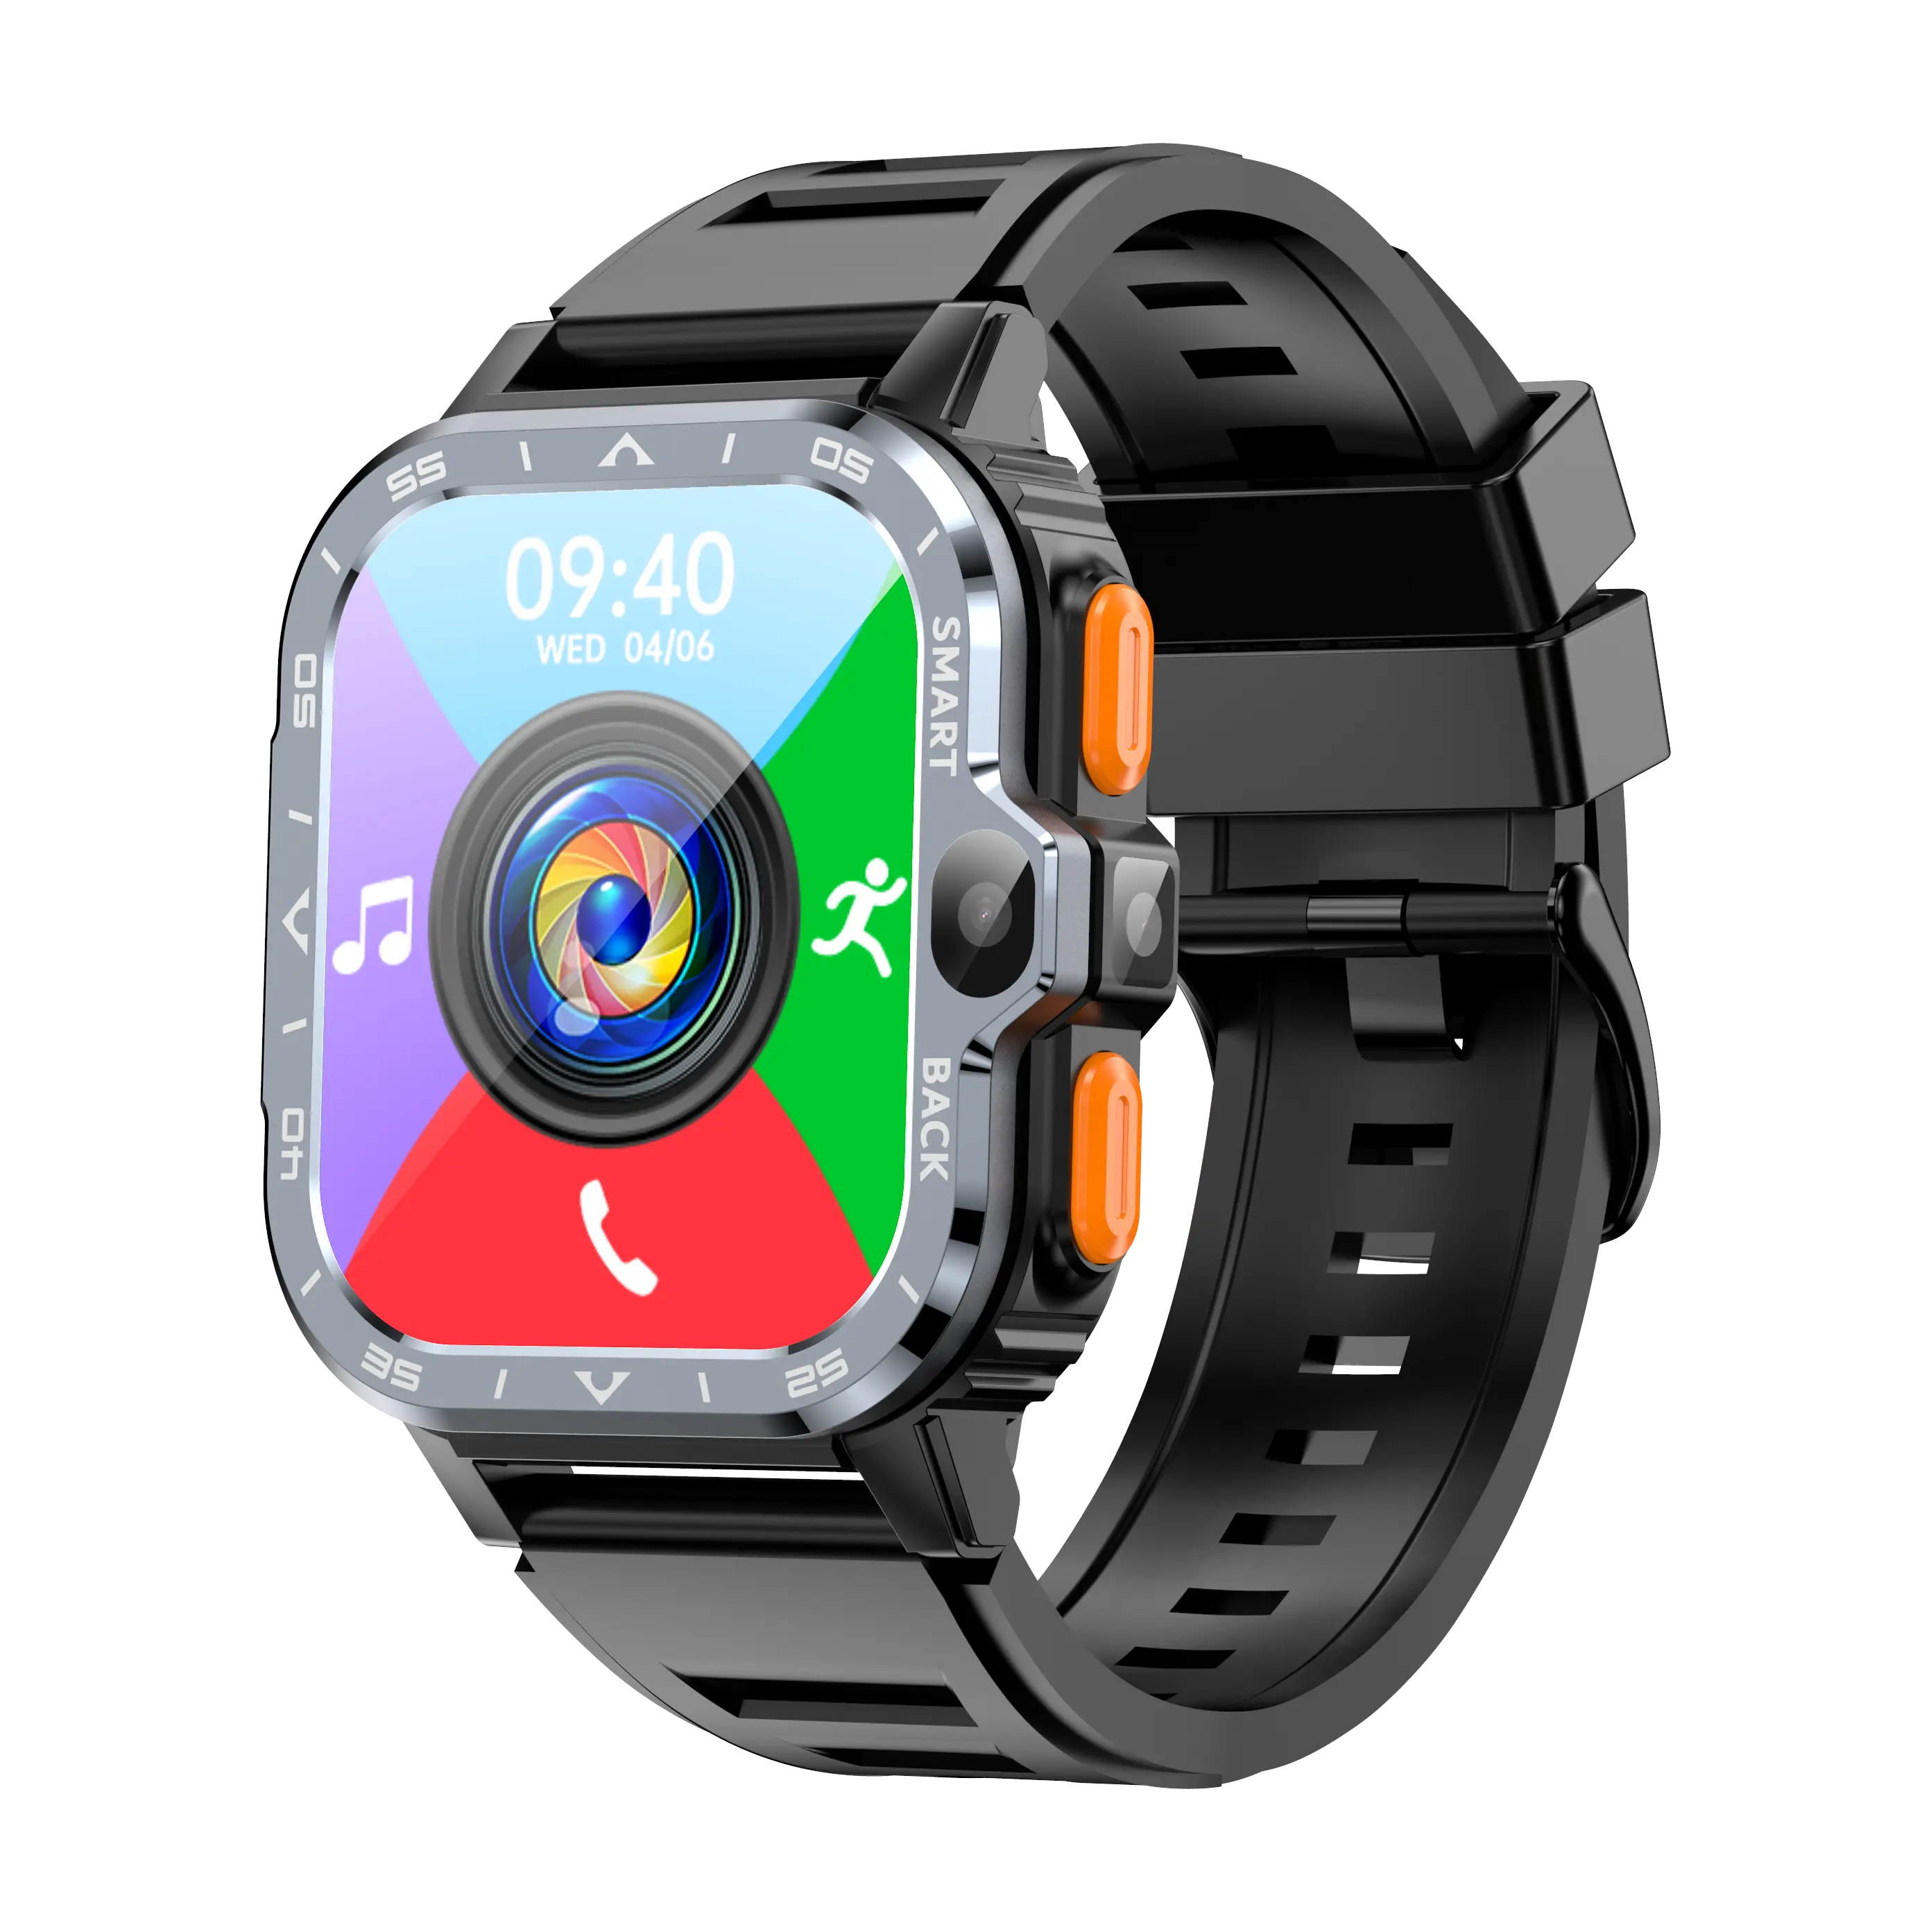 4G más nuevo de alta calidad 2G + 16G teléfono móvil reloj inteligente Android pantalla táctil reloj inteligente con monitoreo de frecuencia cardíaca SQ333